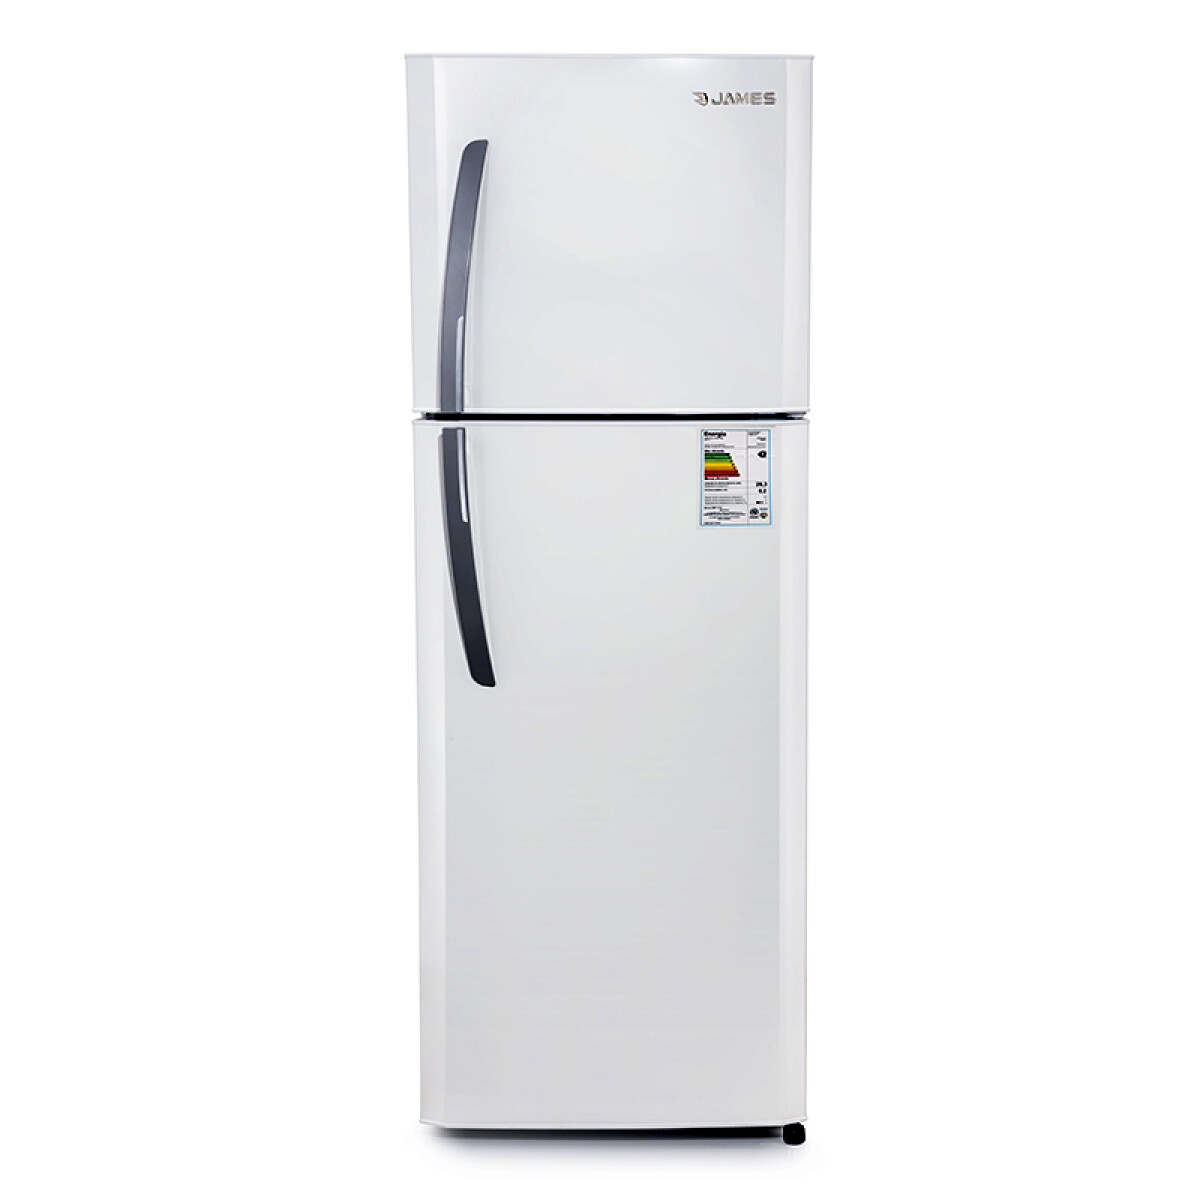 Refrigerador James JM 350 Blanco 